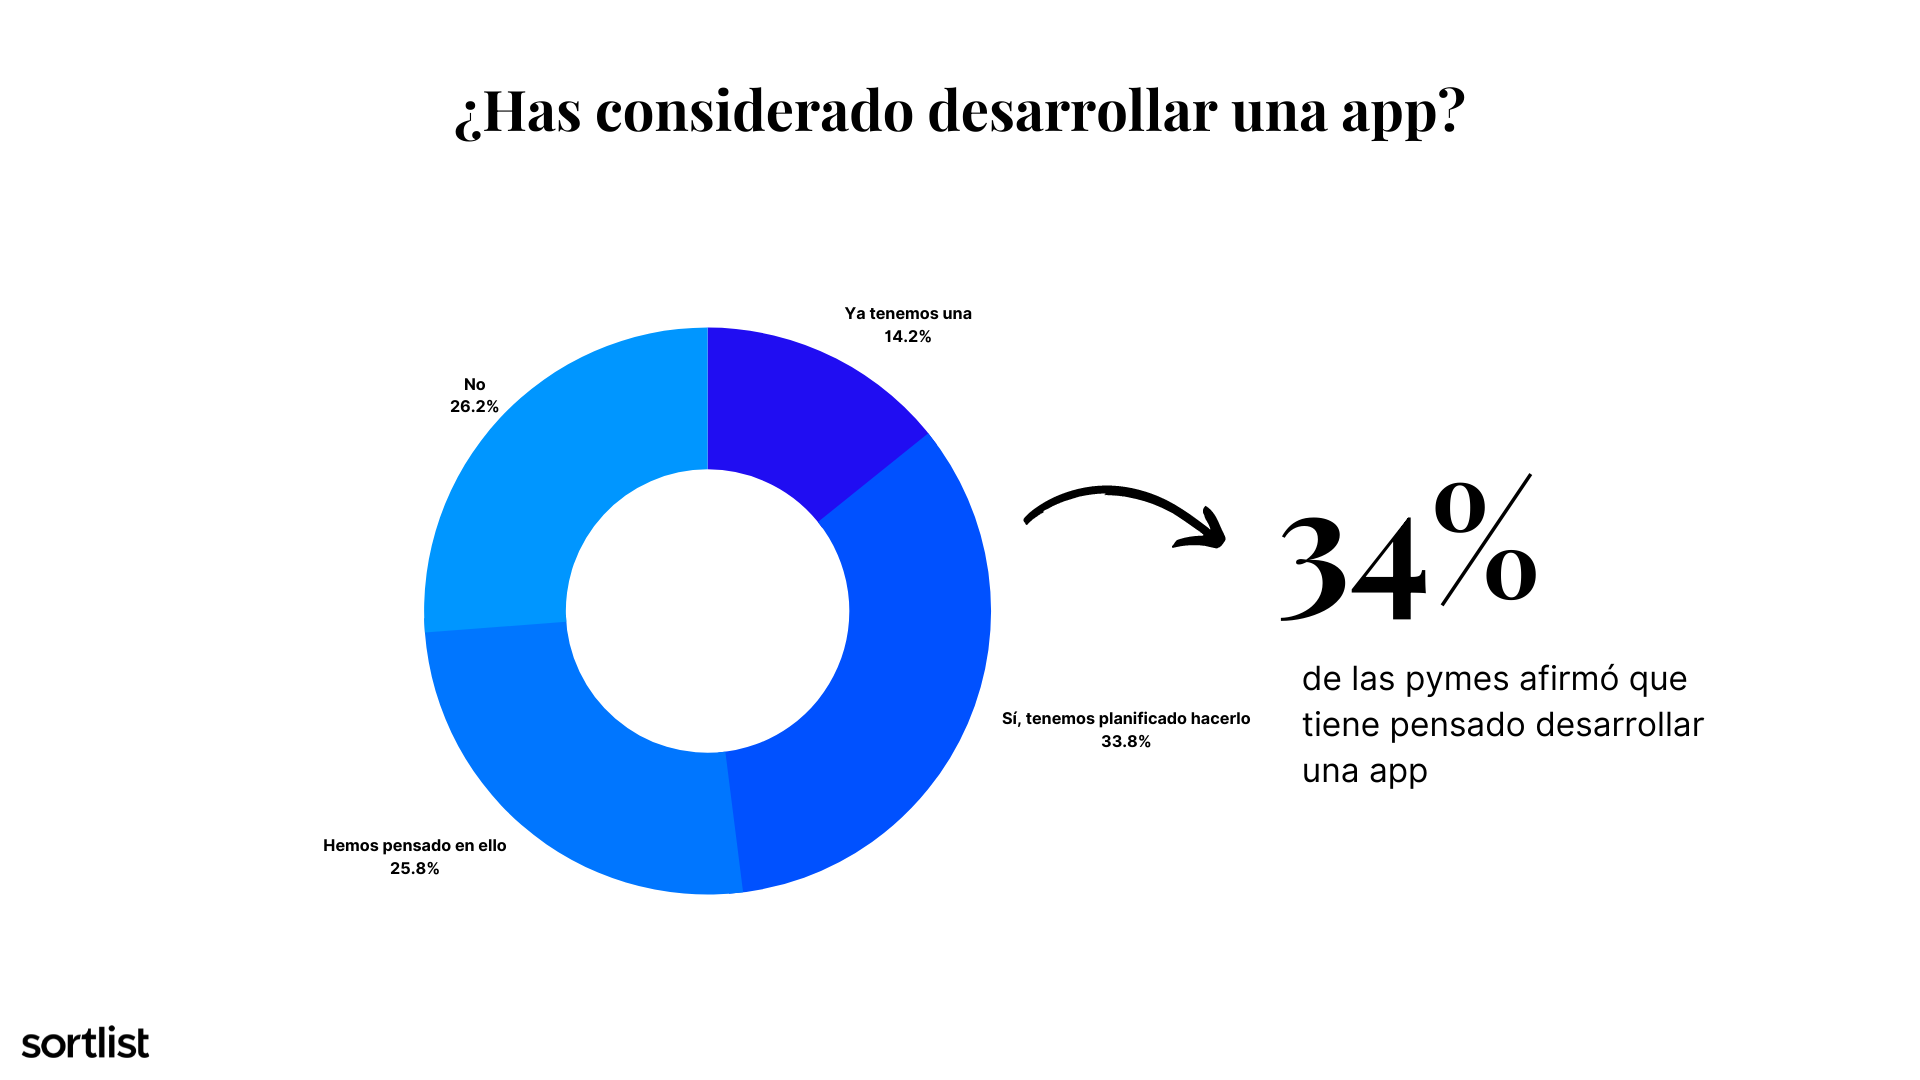 grafico sobre pymes que han pensado desarrollar una app